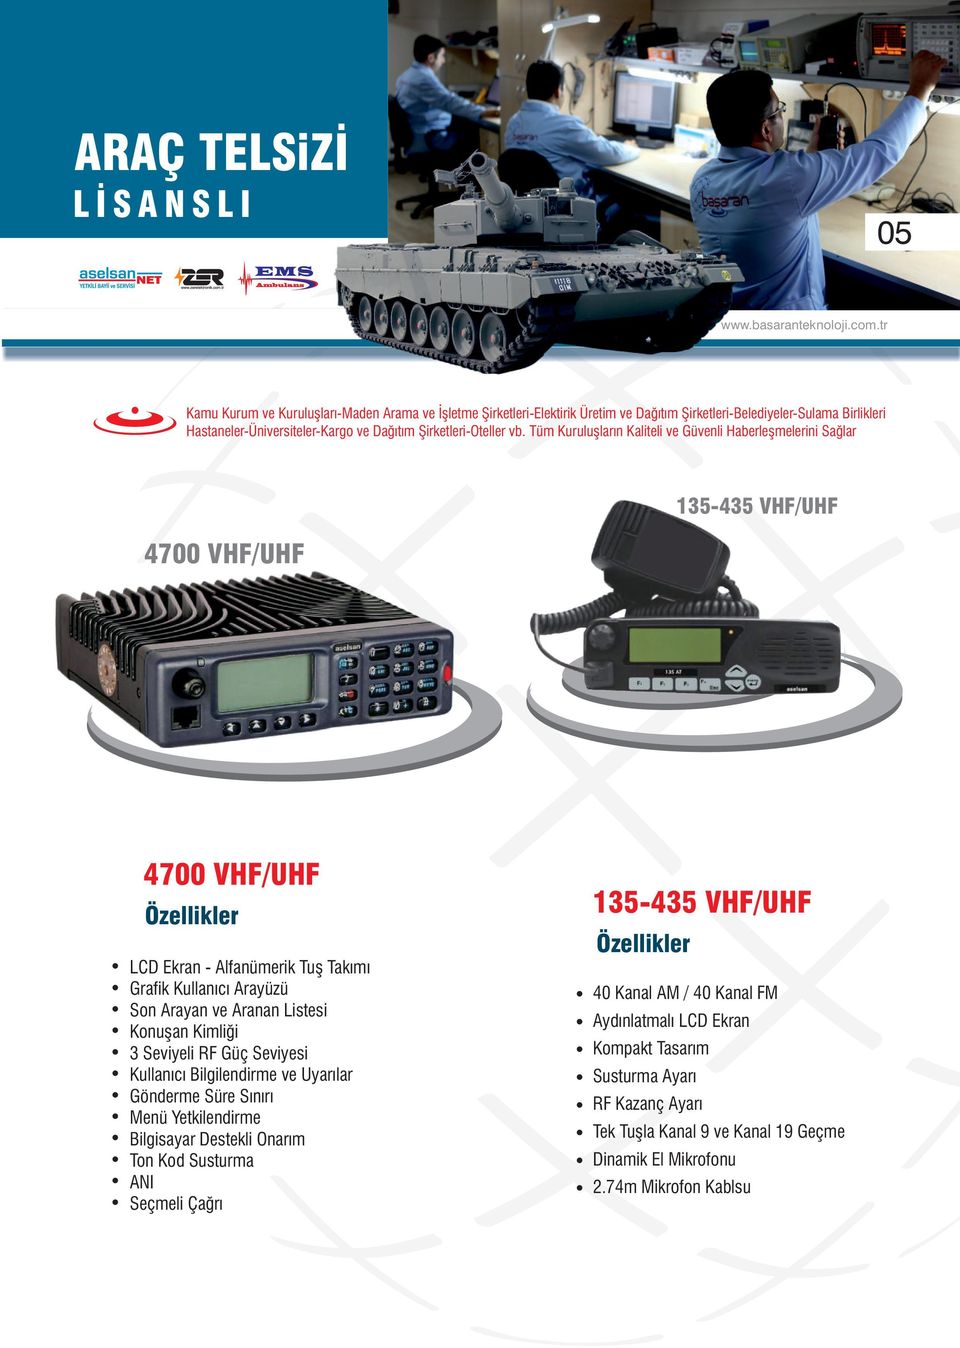 Tüm Kuruluşların Kaliteli ve Güvenli Haberleşmelerini Sağlar 4700 VHF/UHF 135-435 VHF/UHF 4700 VHF/UHF Özellikler LCD Ekran - Alfanümerik Tuş Takımı Grafik Kullanıcı Arayüzü Son Arayan ve Aranan